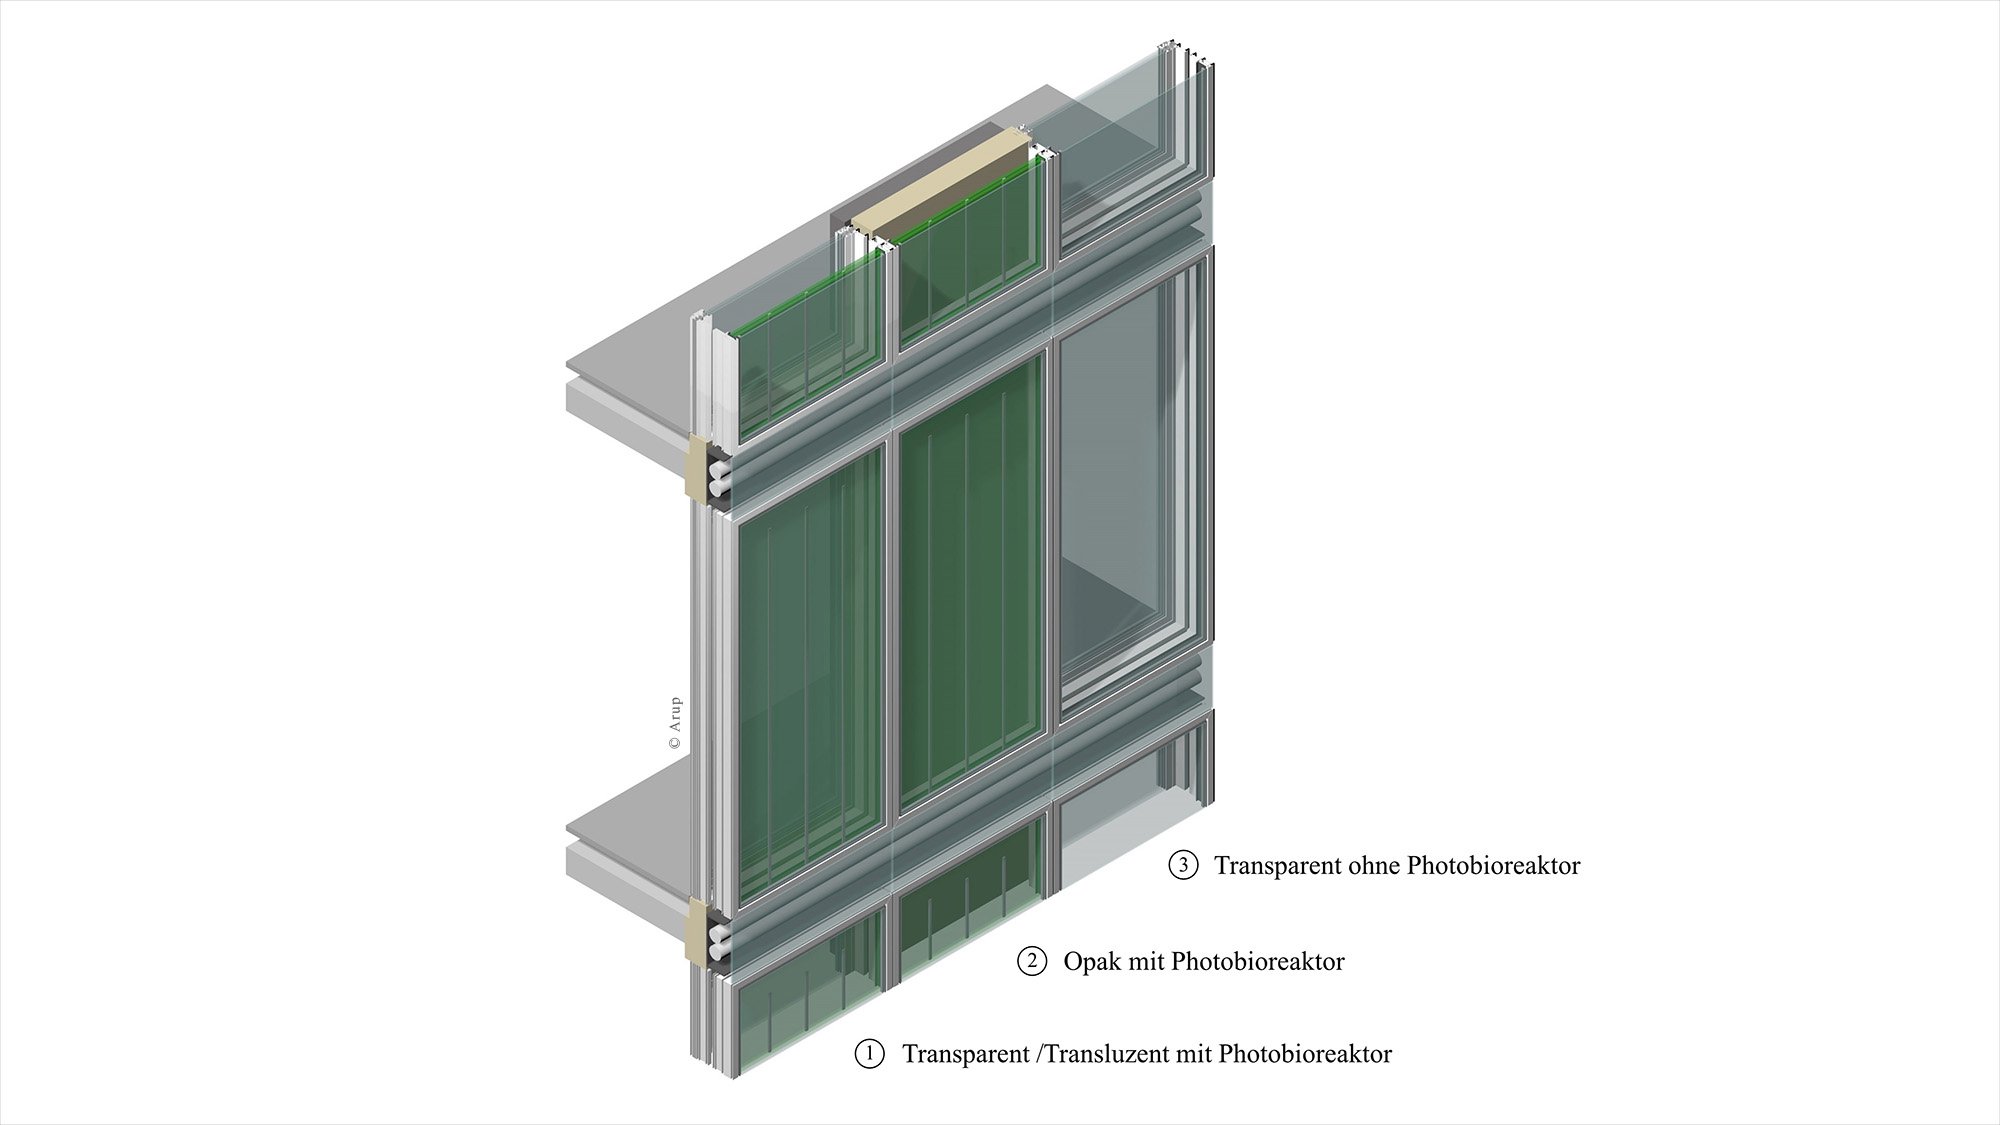 Visuelle Darstellung der drei Fassadenelemente der Bioenergiefassade mit integrierten Photobioreaktoren.